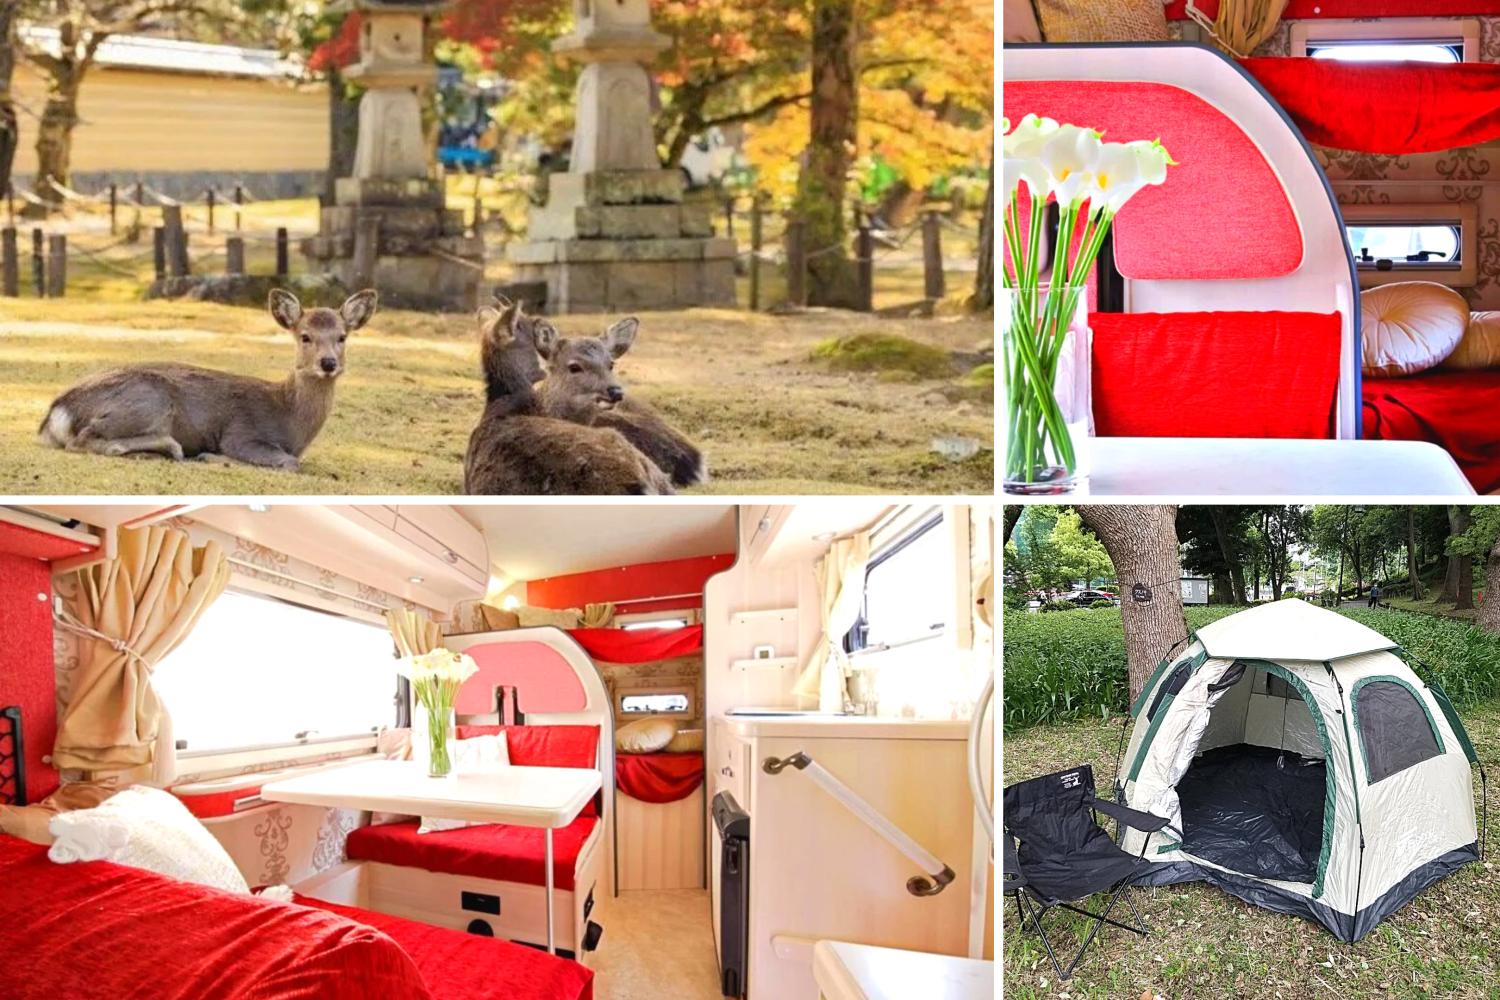 【Tokto】Japan 5ppl RV Caravan 24 hours Rental Experience(JTSR)